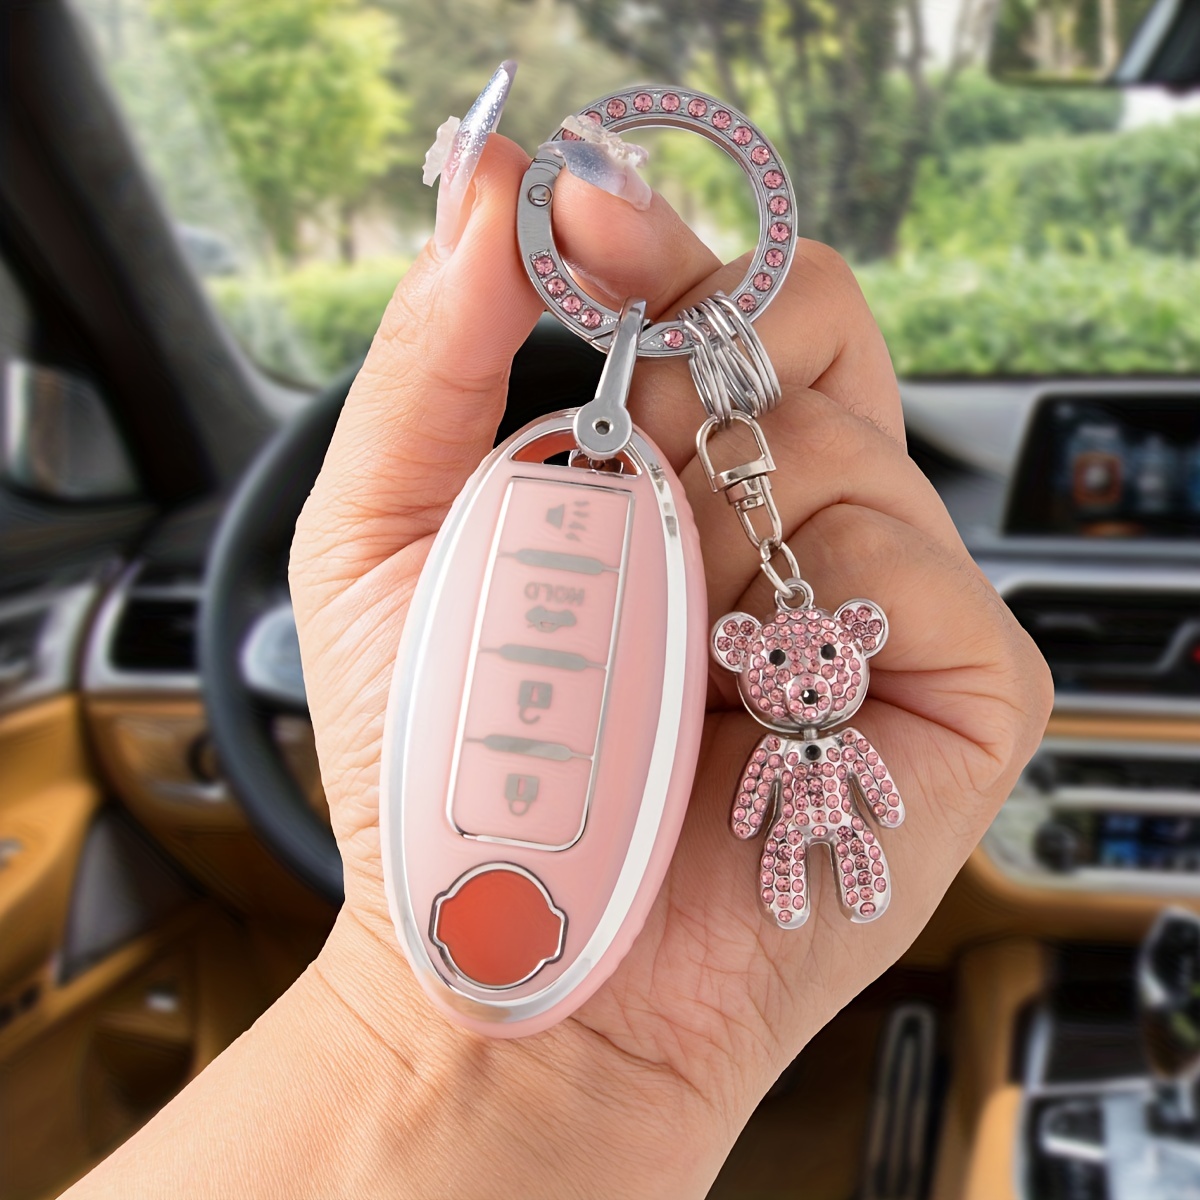 Luxury Car KeyChains - Minnie/Bear Keychain with Pom Pom - USA Seller